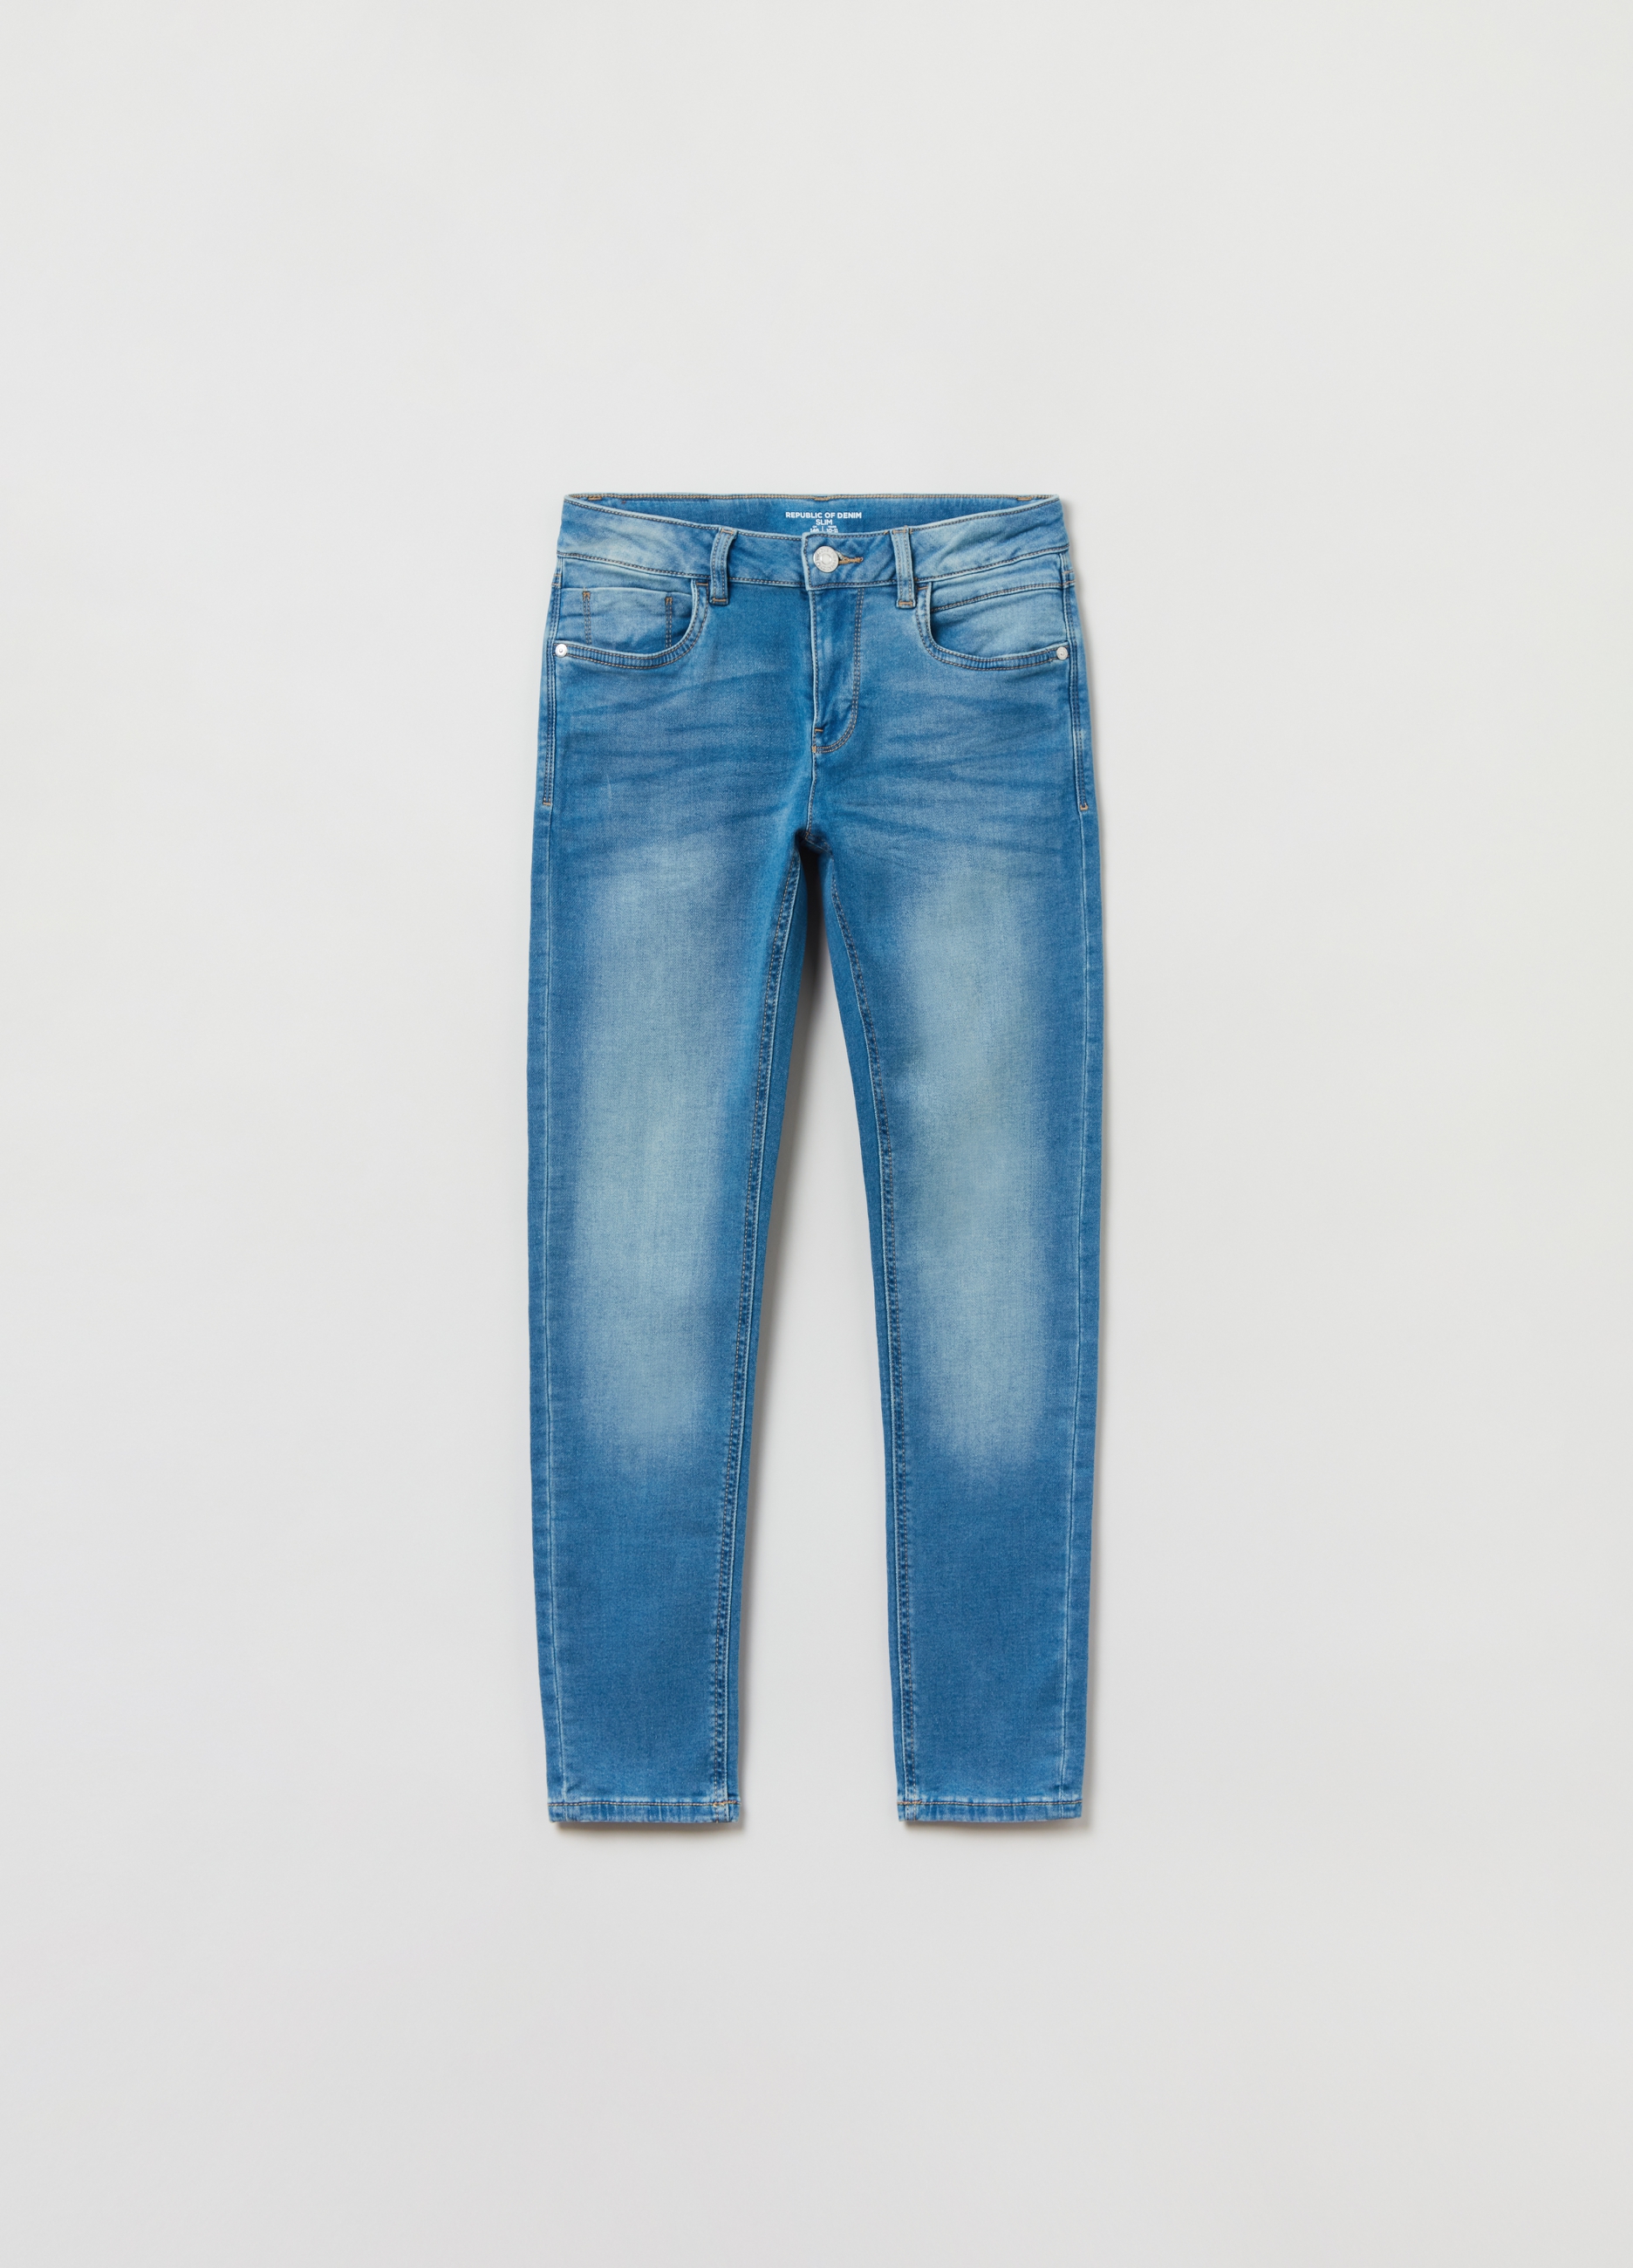 Джинсы OVS для мальчиков, синие, 13-14 лет, 1842480 джинсы jogger fit для мальчиков